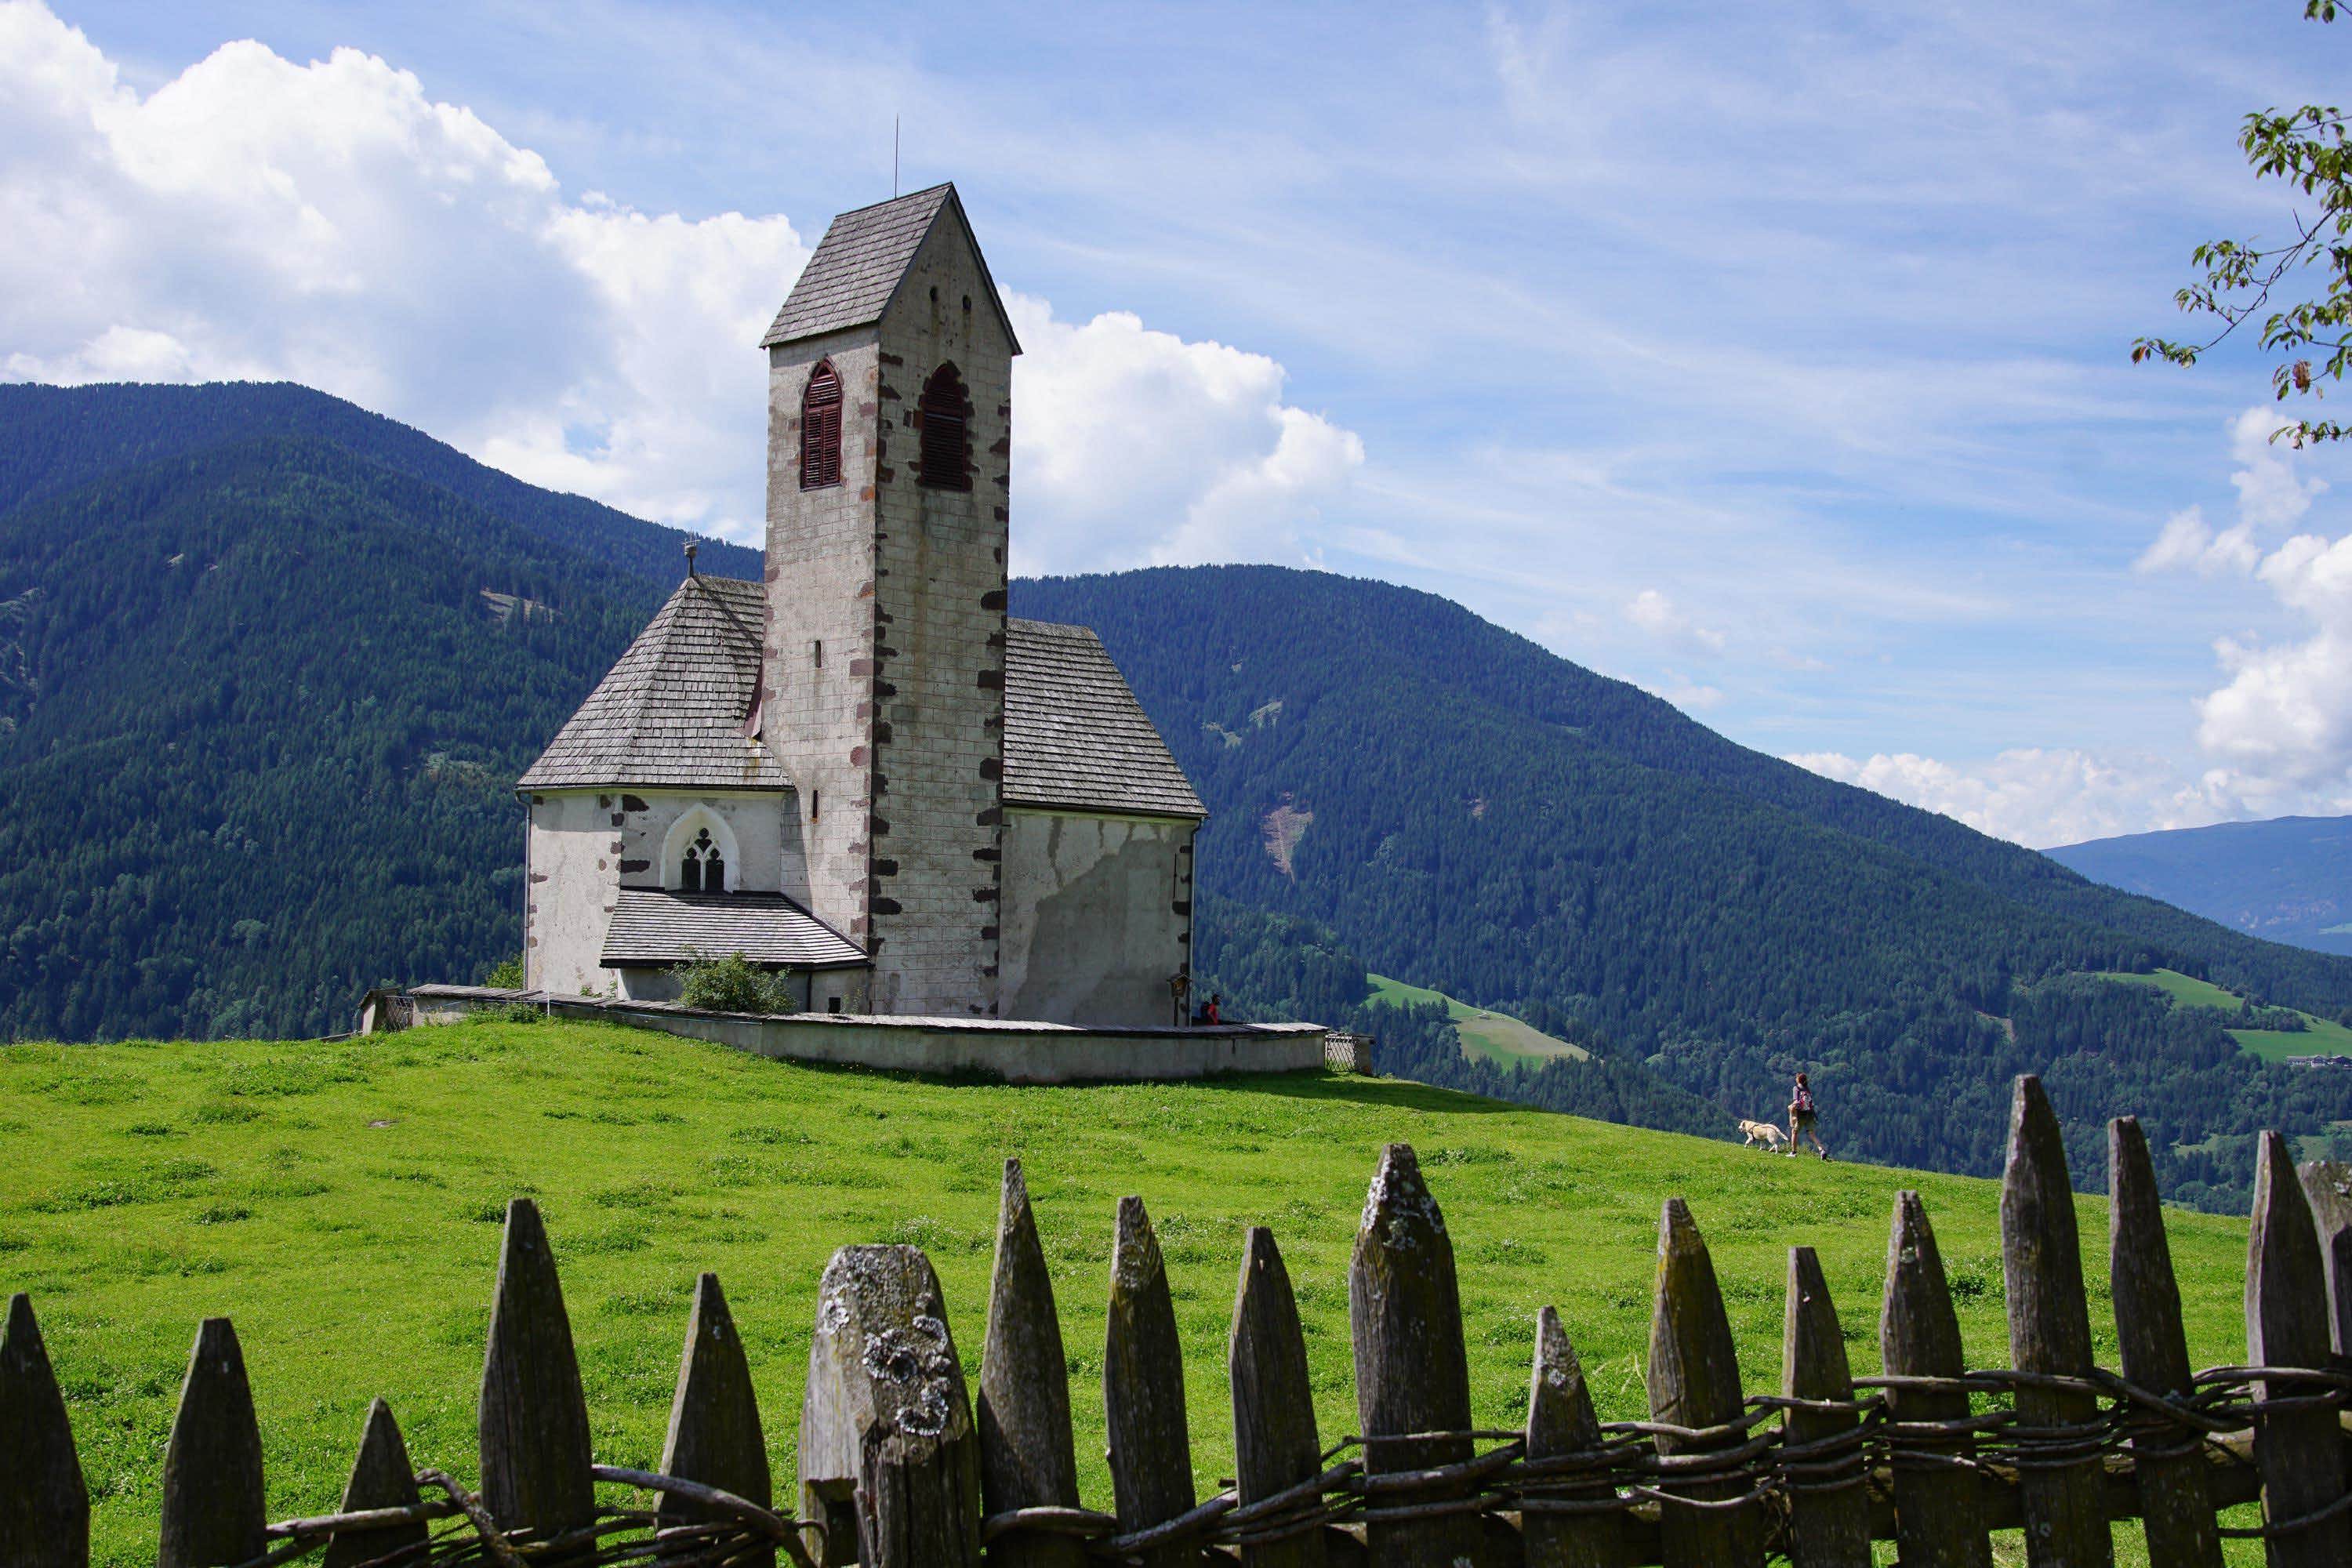 Prendere il Diploma In Un Anno in Trentino Alto Adige al Serale o On Line